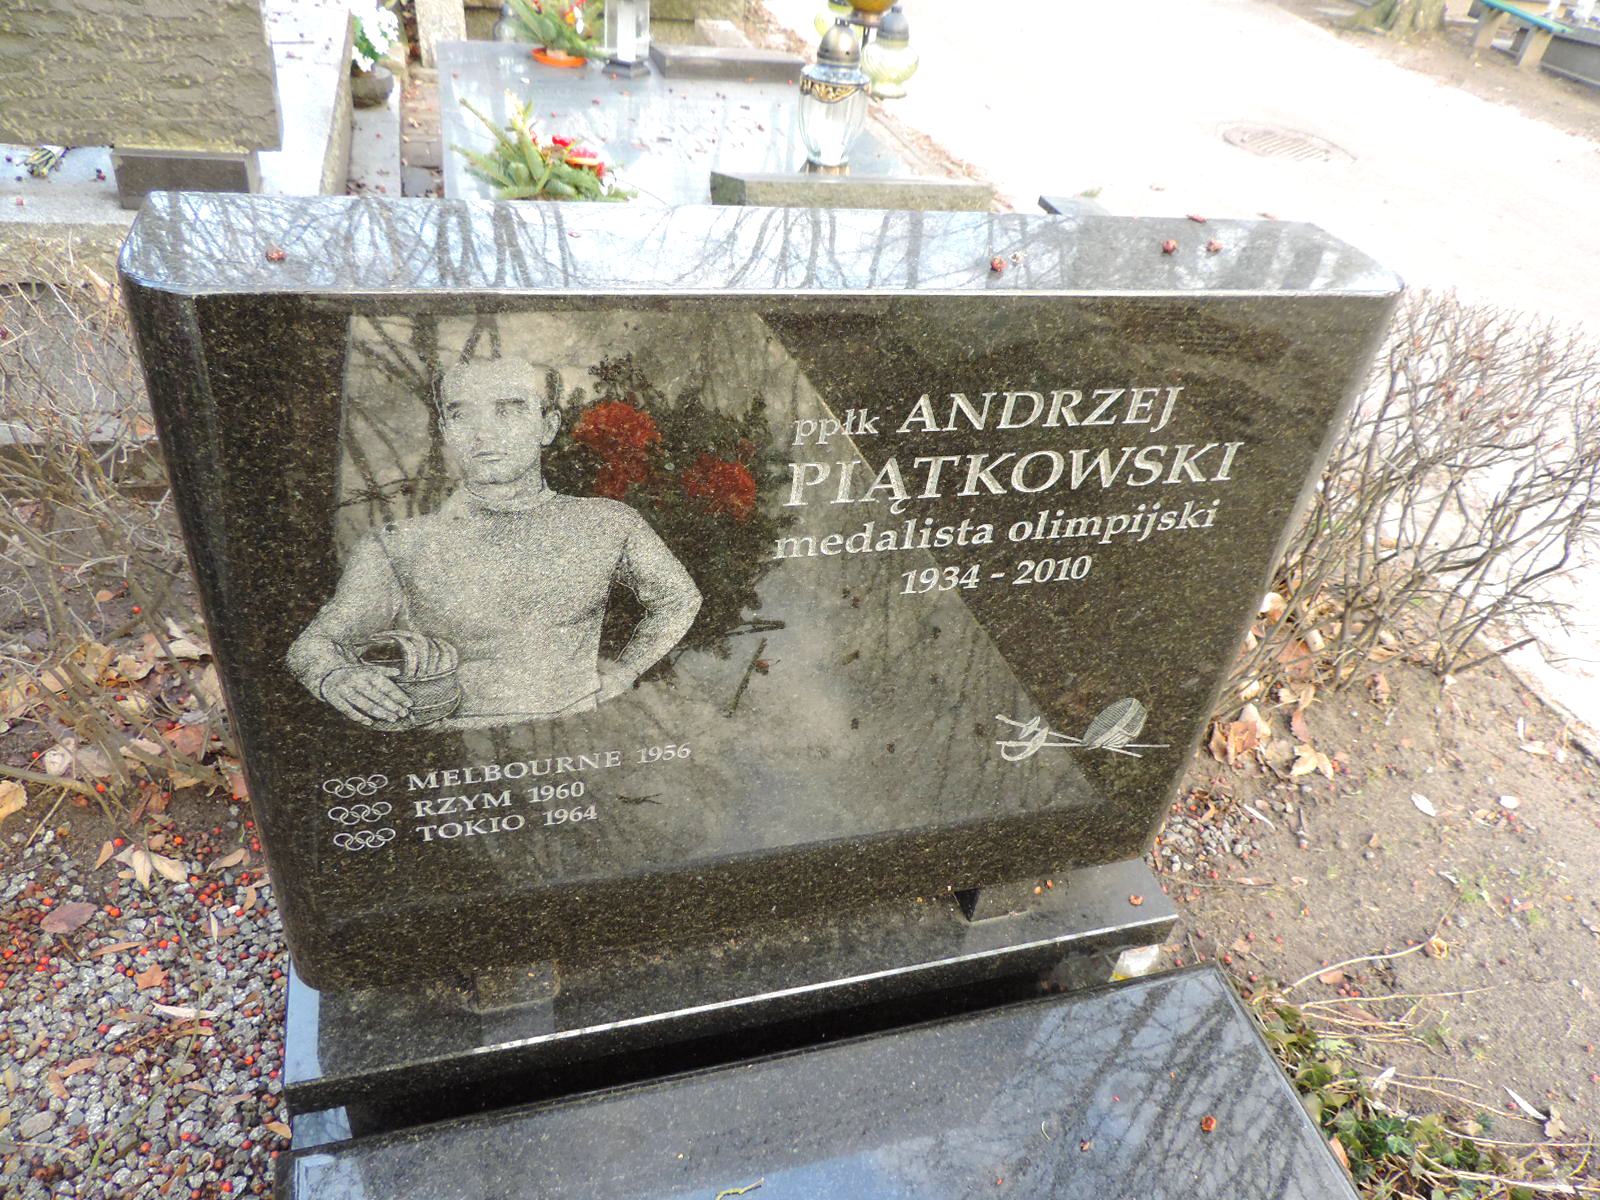 The grave of Andrzej Piątkowski - Warsaw